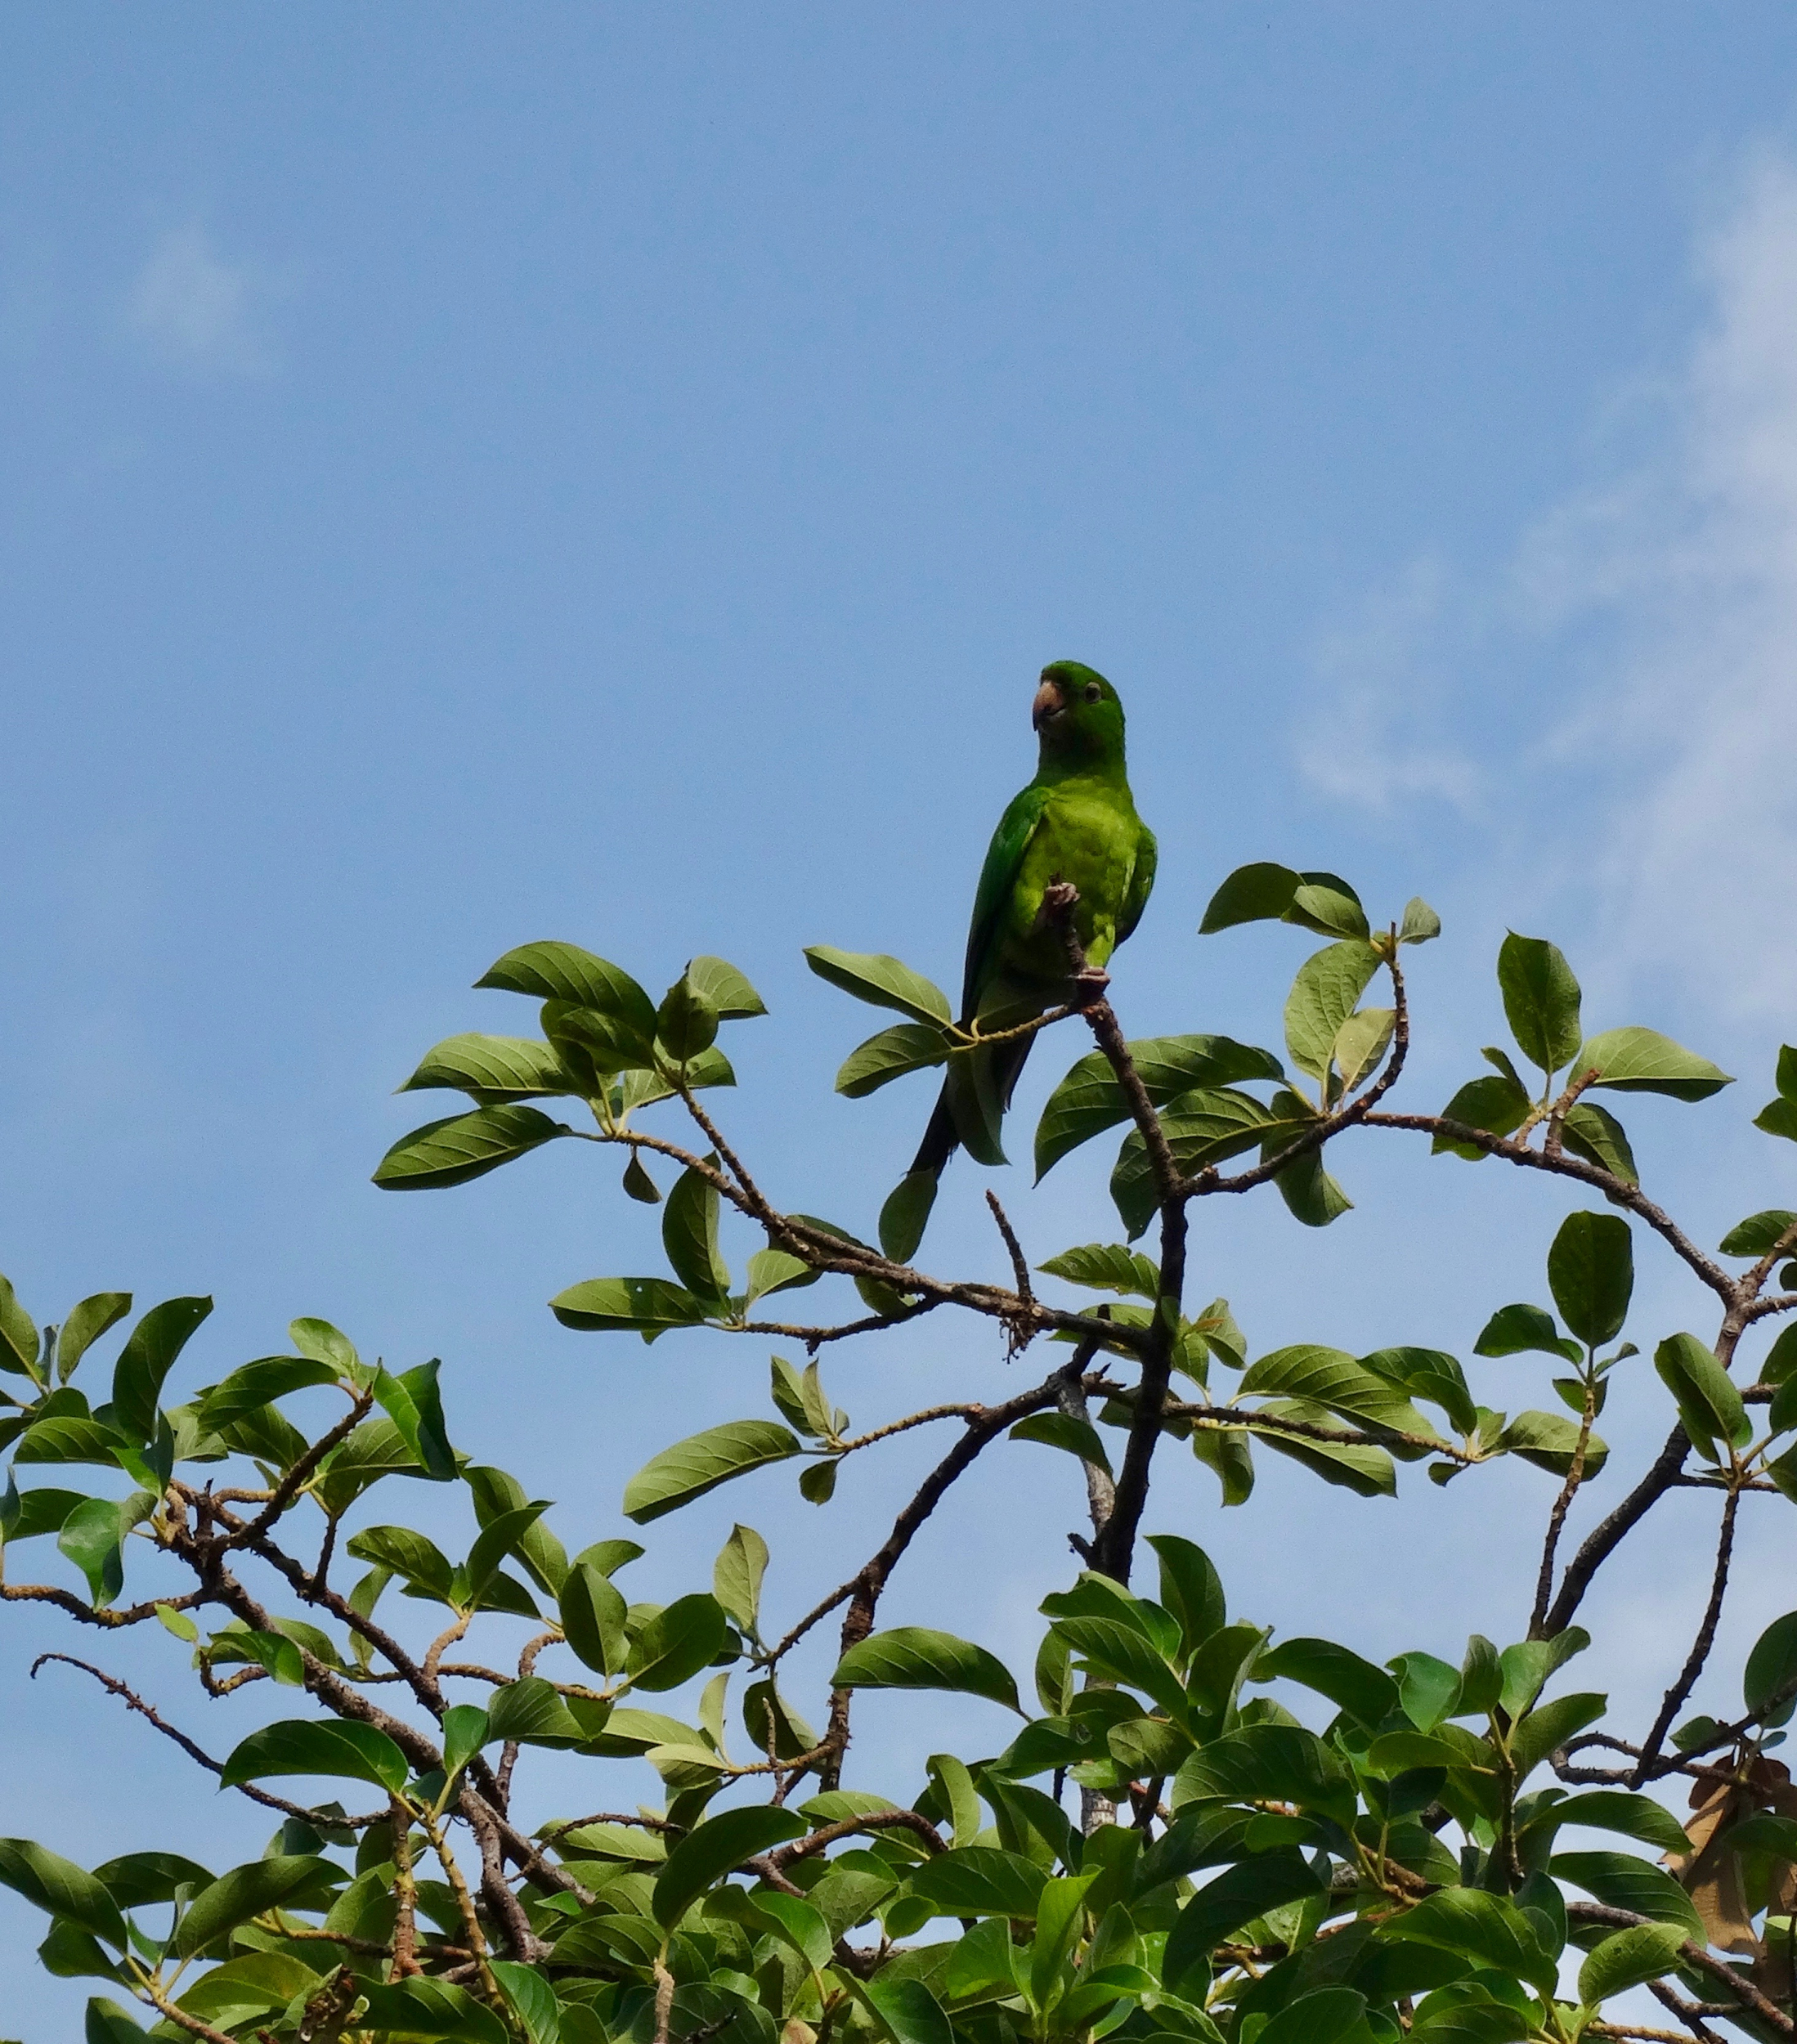 29. Green Parrot